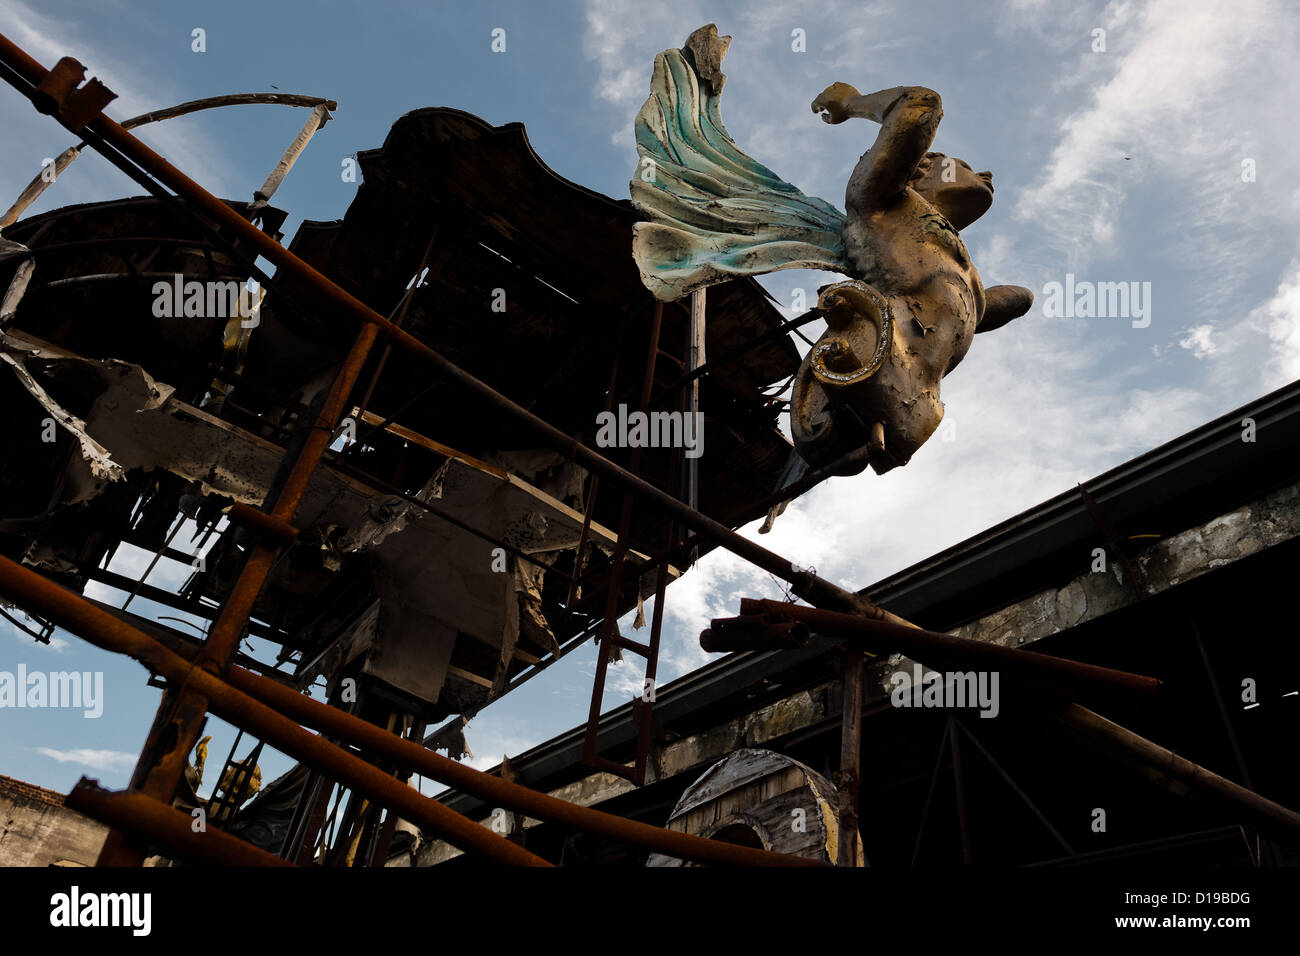 A démantelé et abandonné de flottement carnaval endommagés sur le chantier de travail derrière les ateliers l'école de samba à Rio de Janeiro, au Brésil. Banque D'Images